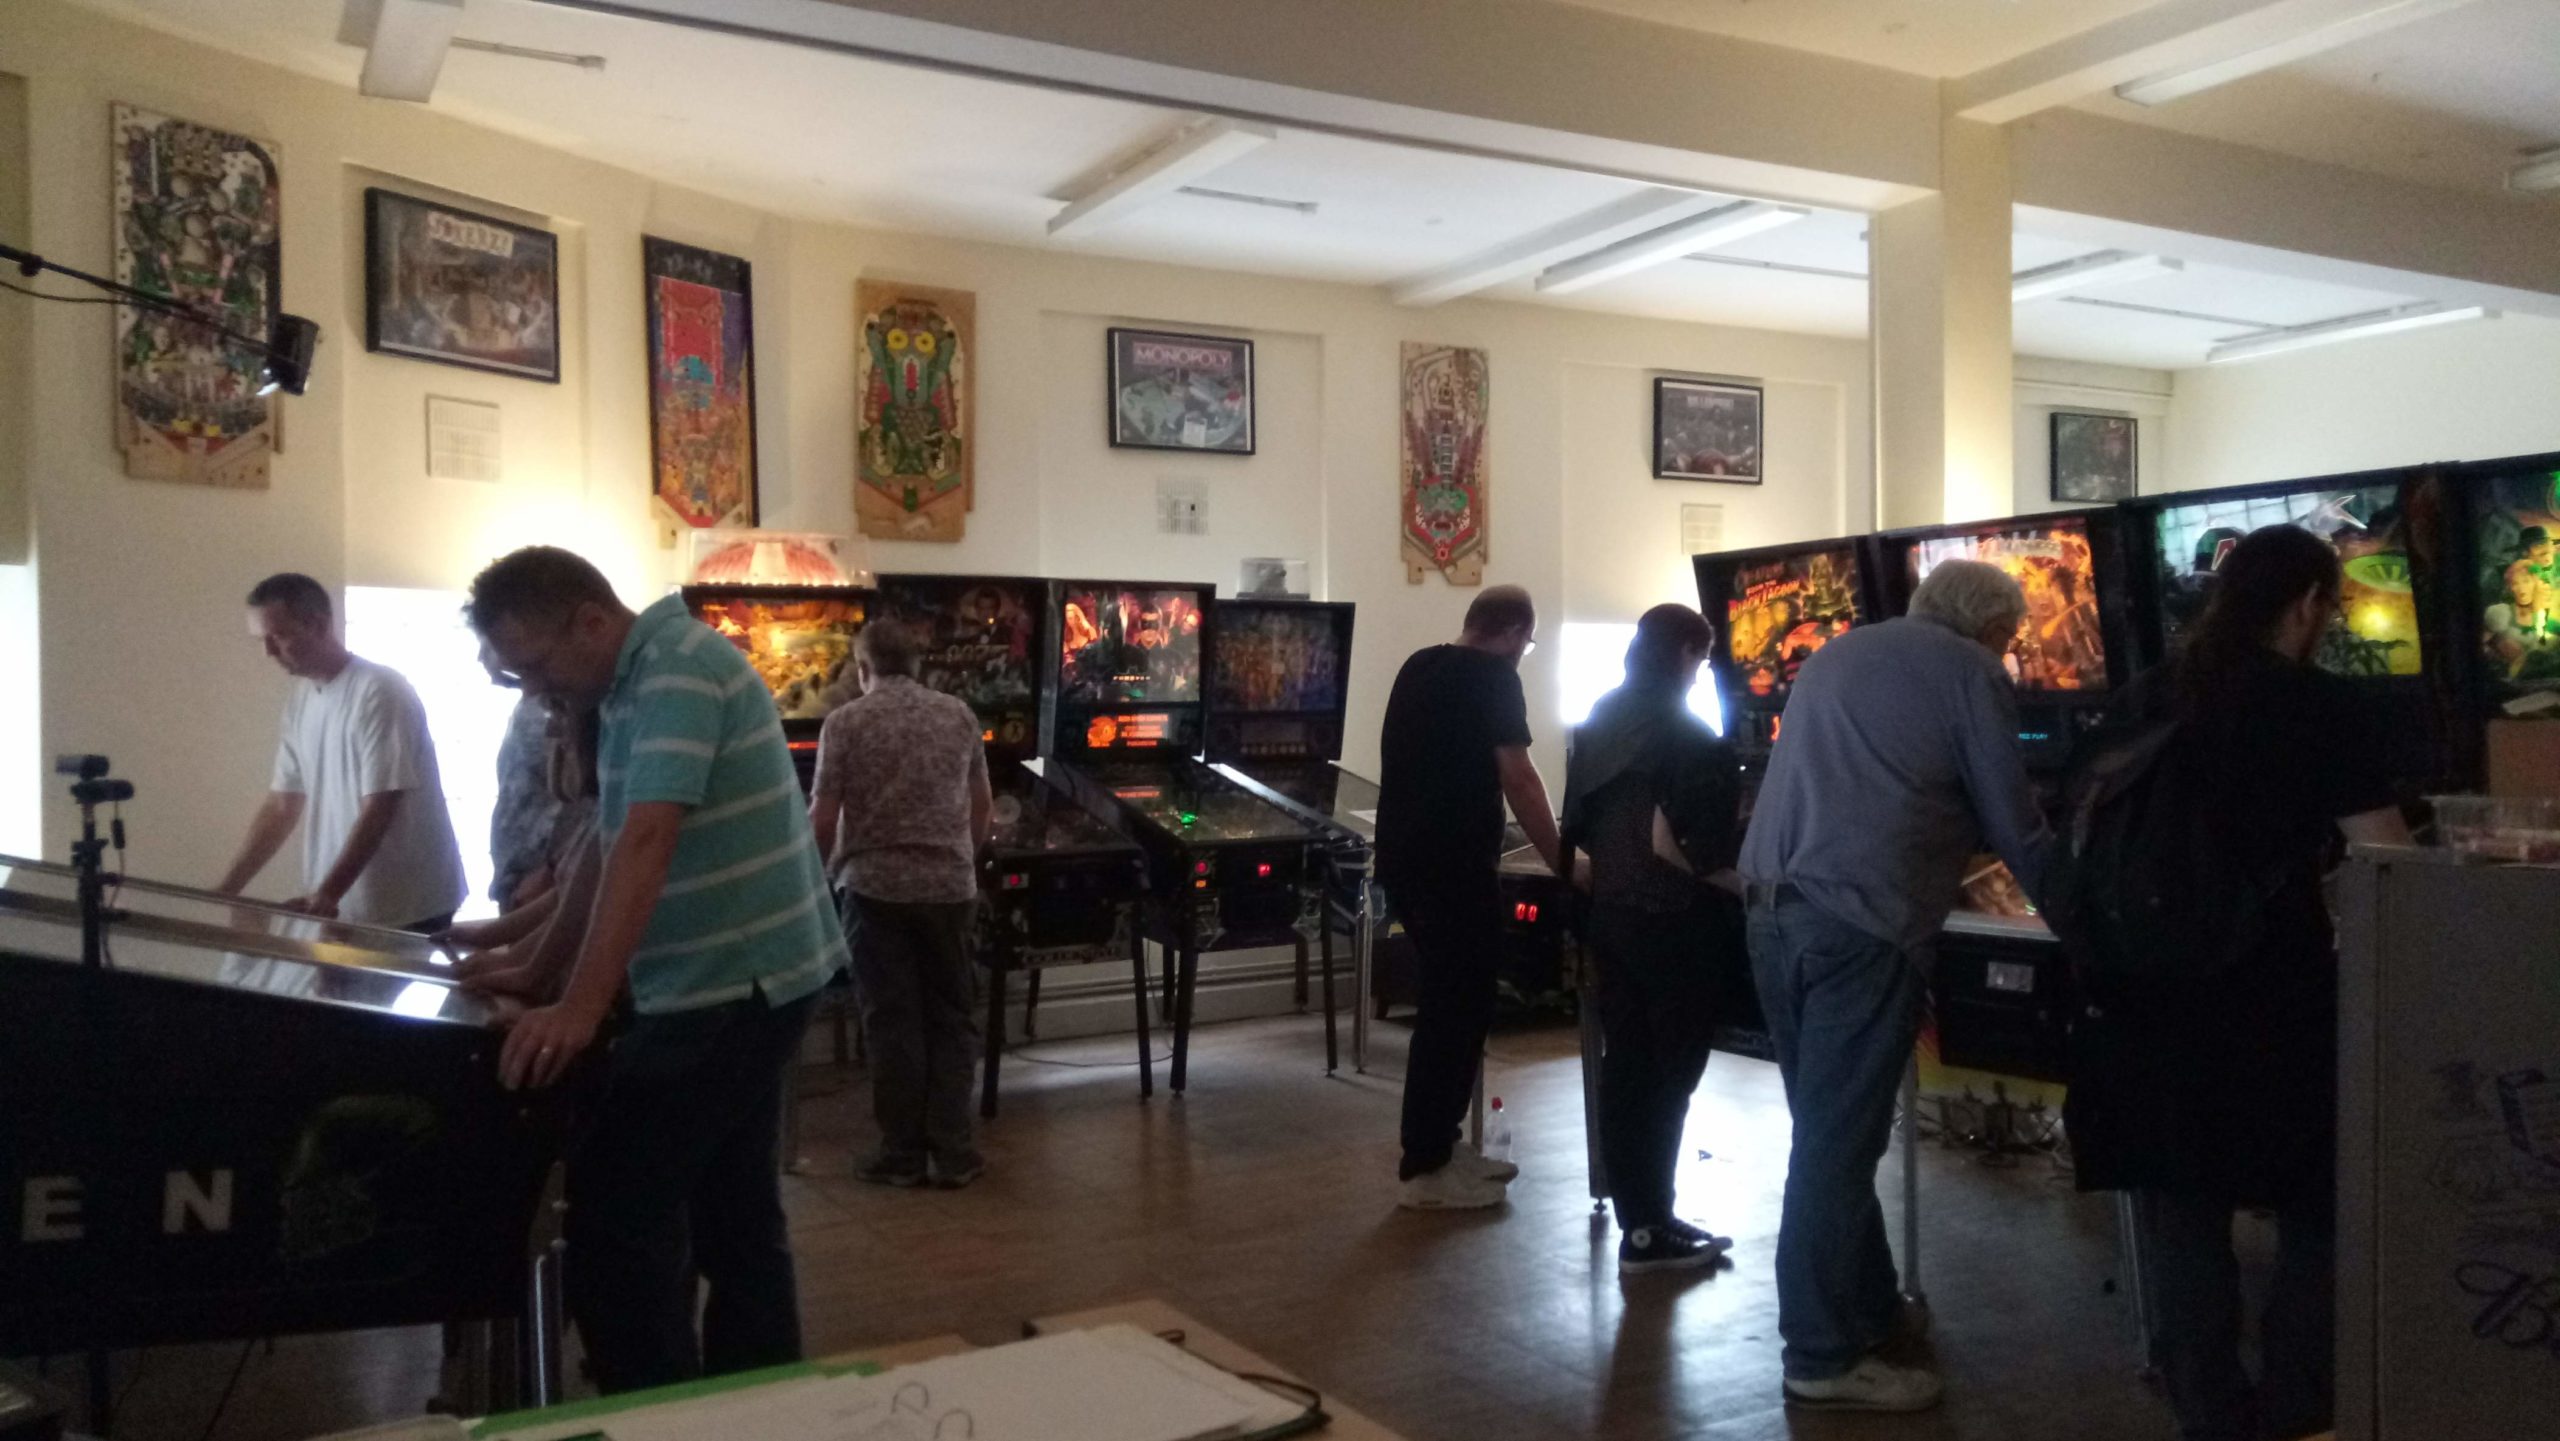 Guests enjoying the games at Pinball Republic London